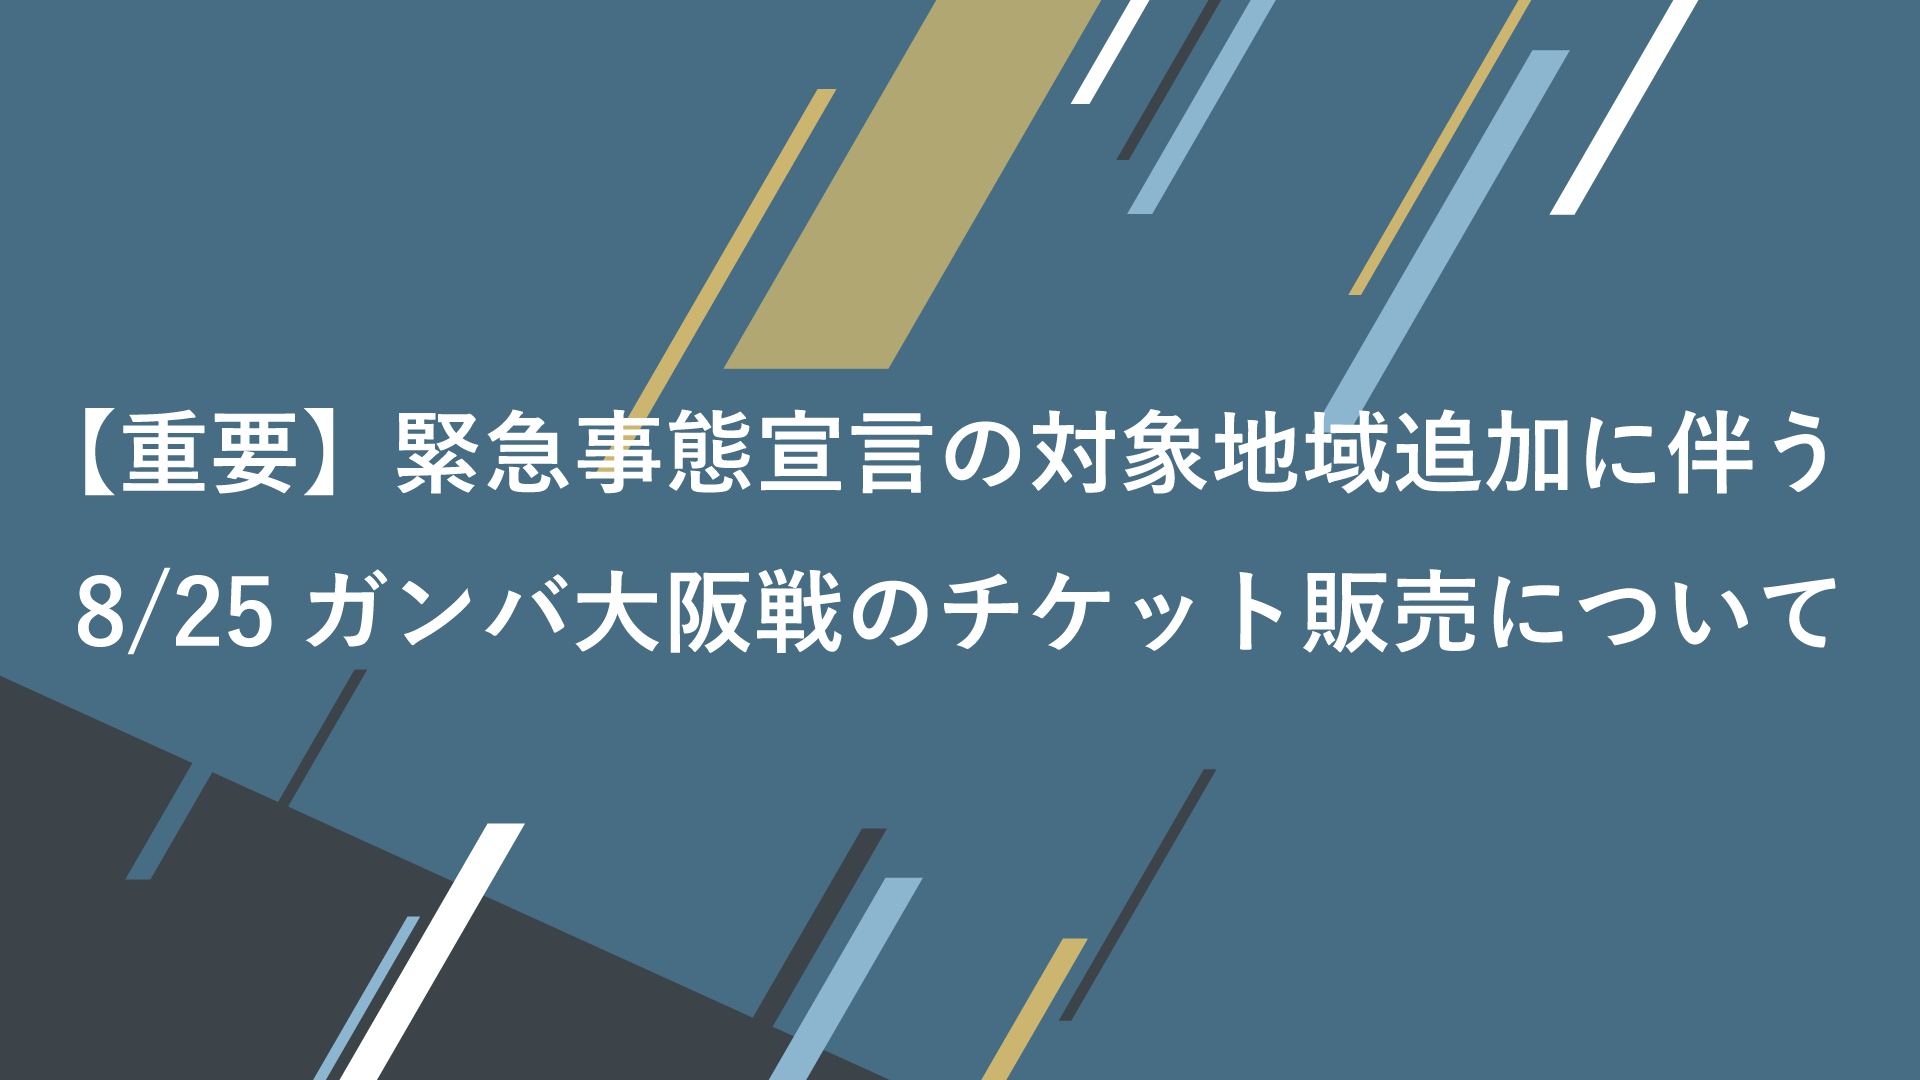 重要 緊急事態宣言の対象地域追加に伴う8 25ガンバ大阪戦のチケット販売について 横浜fcオフィシャルウェブサイト